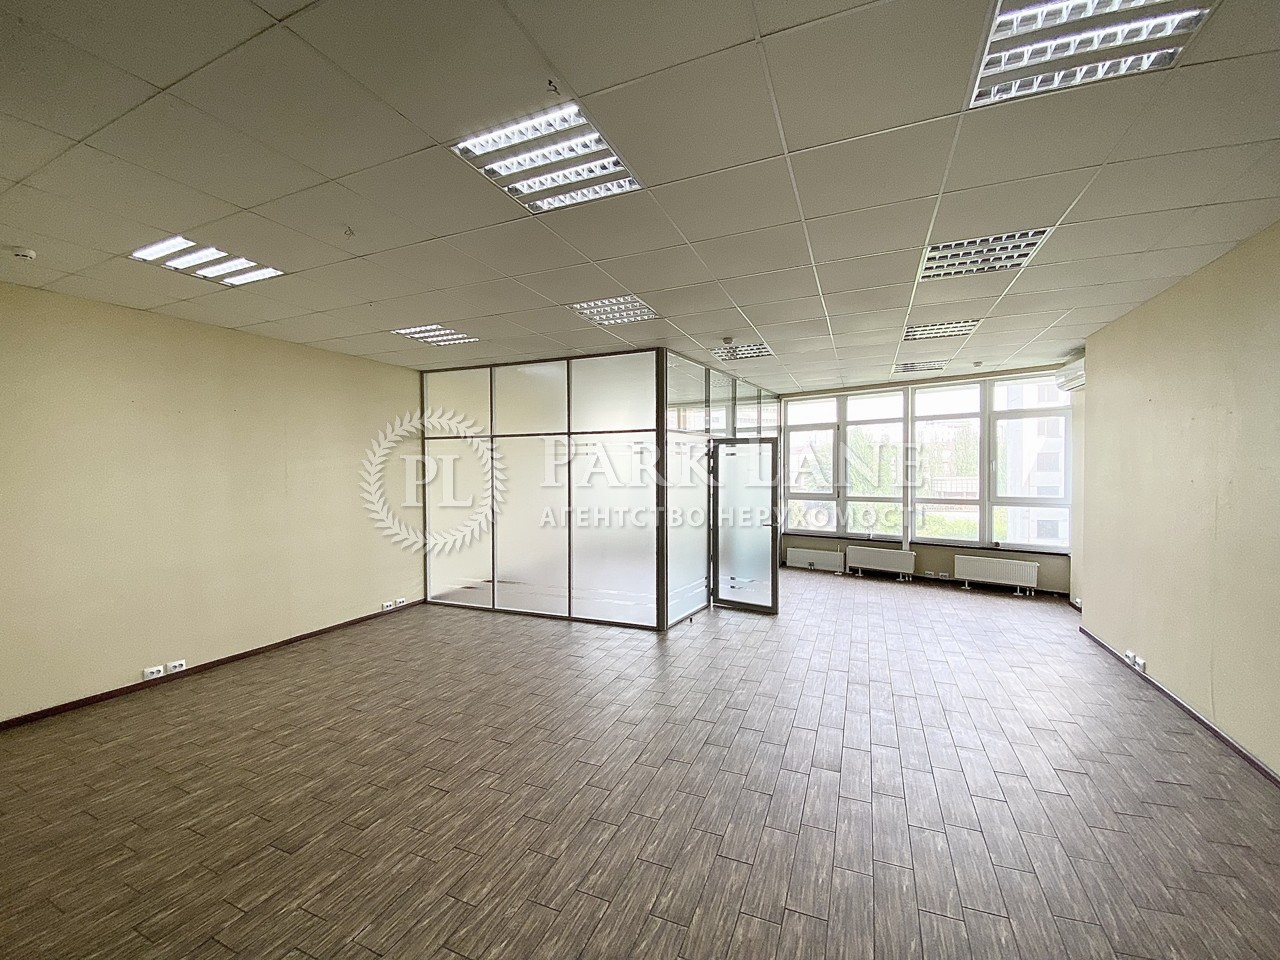  Офис, B-102441, Кловский спуск, Киев - Фото 11